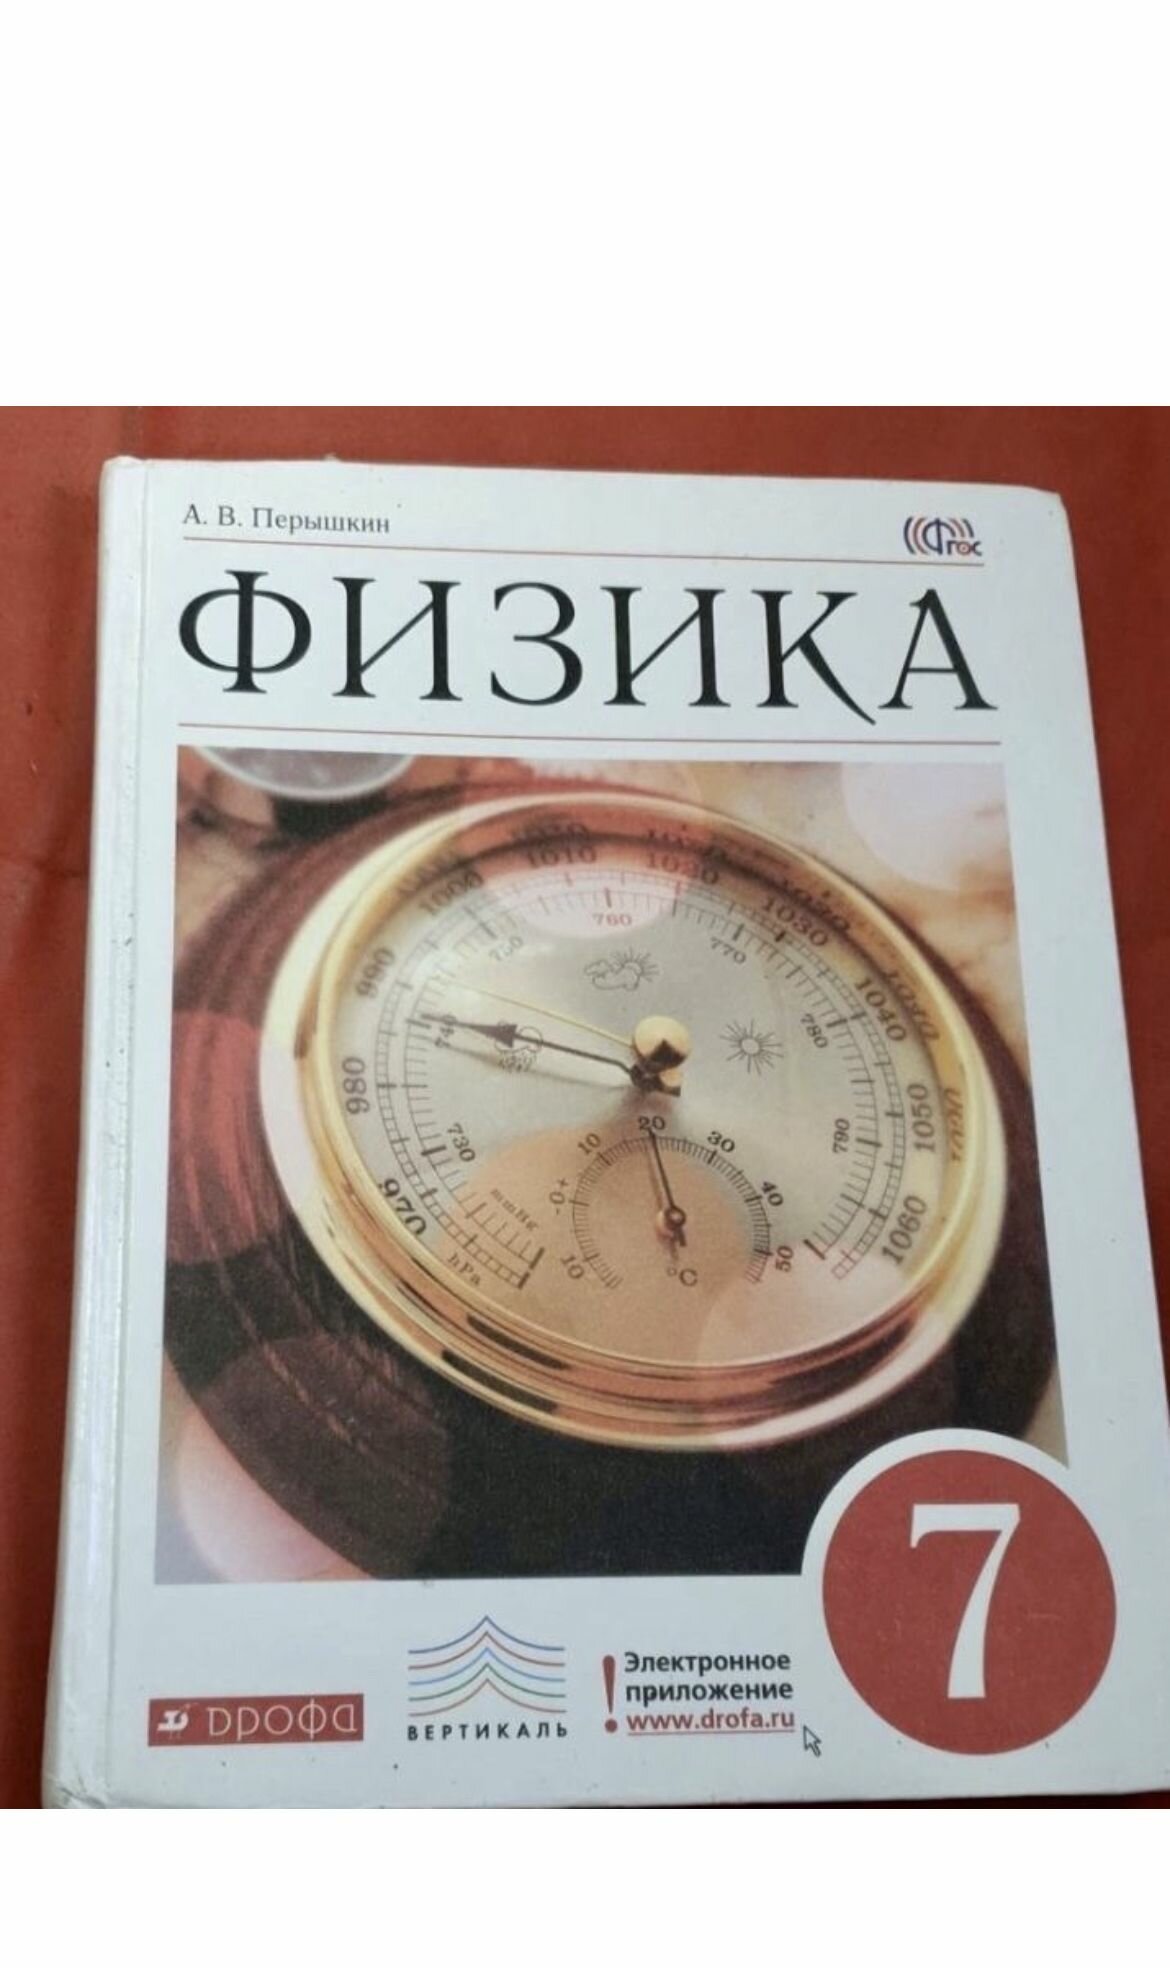 Физика Перышкин 7 класс б у (second hand книга) издательство Дрофа